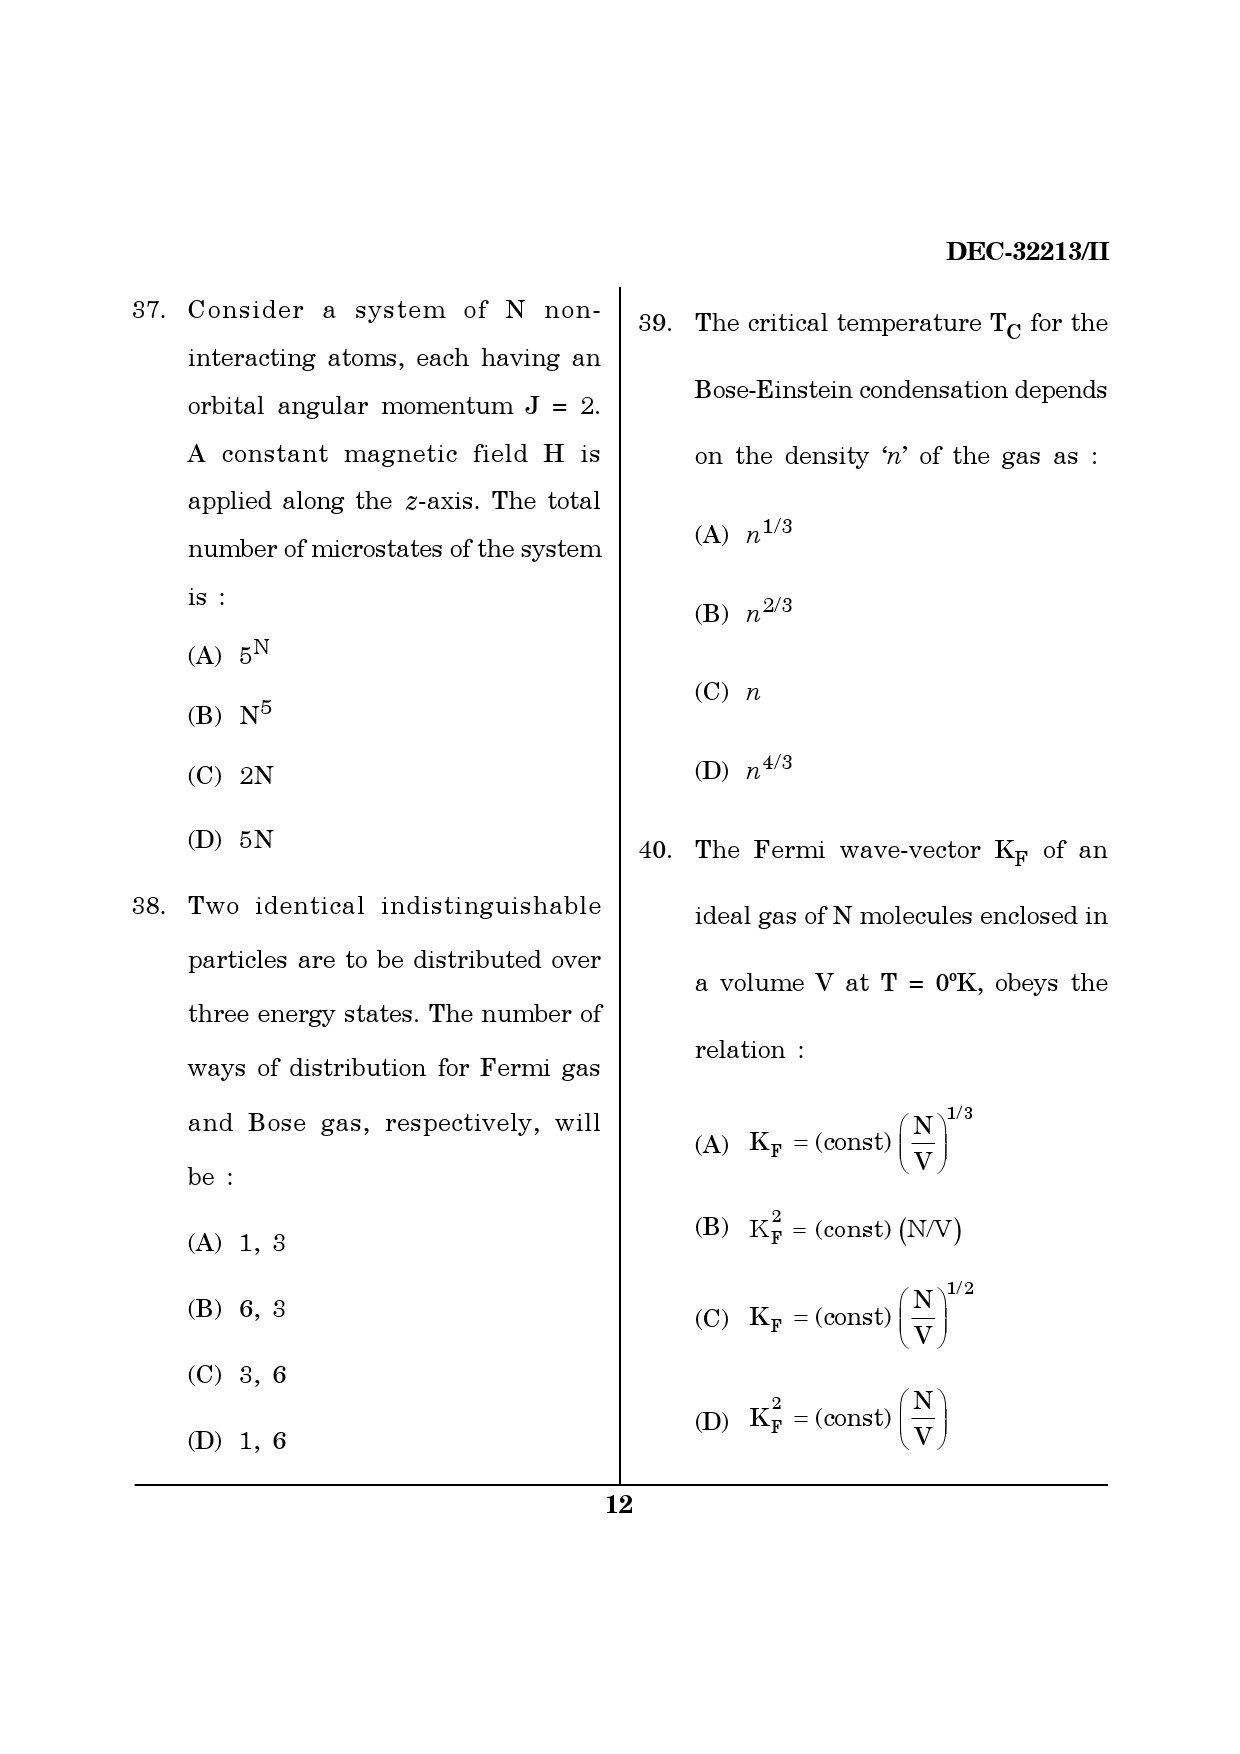 Maharashtra SET Physics Question Paper II December 2013 11